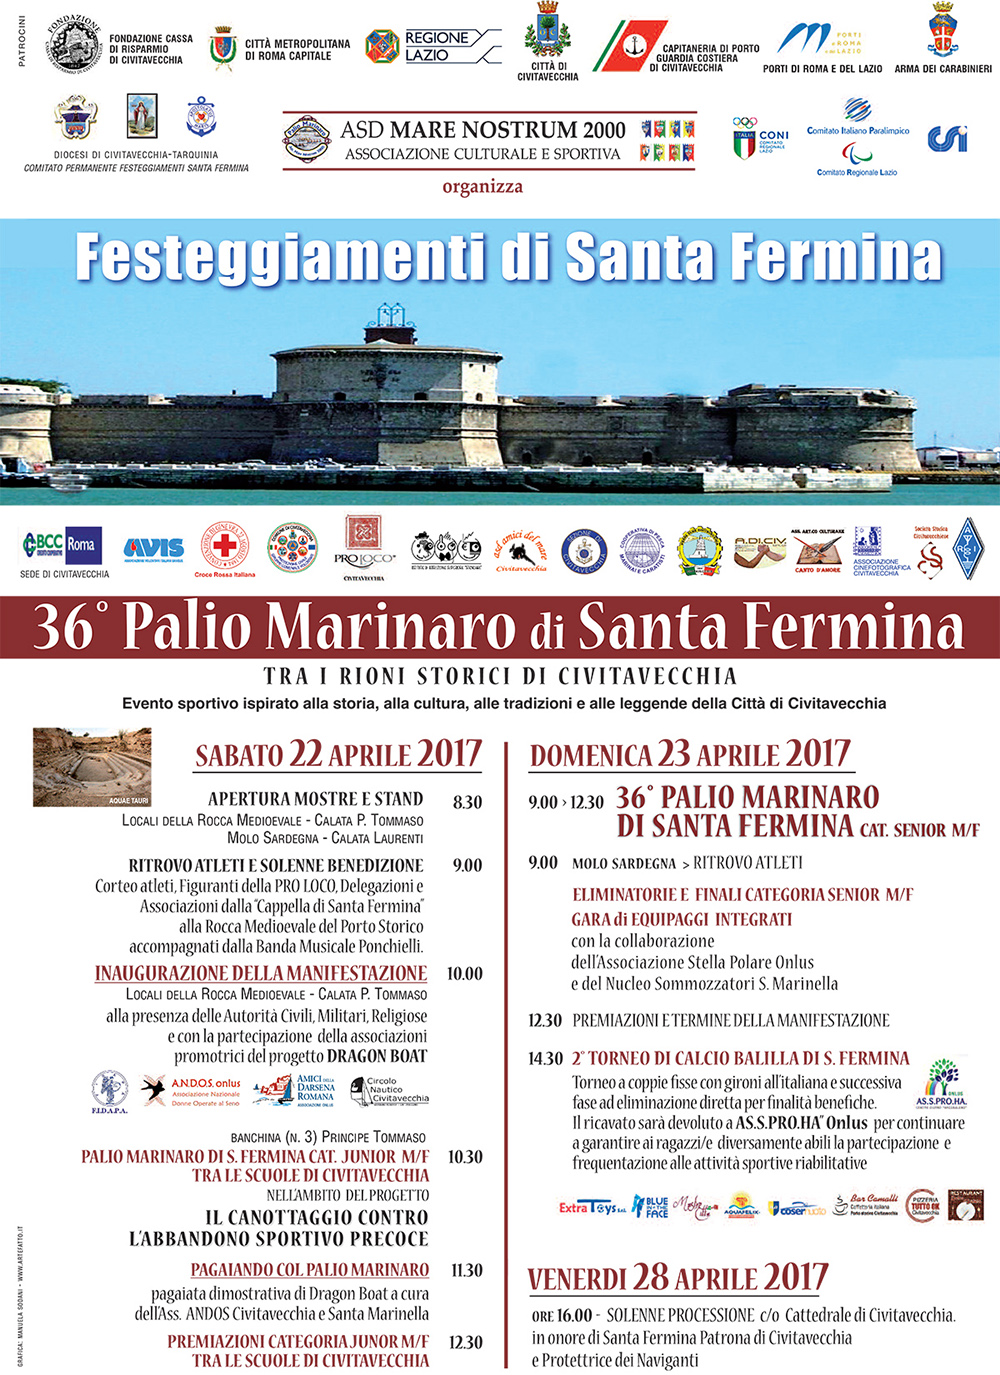 Programme of the 36th Palio Marinaro of Santa Fermina in Civitavecchia